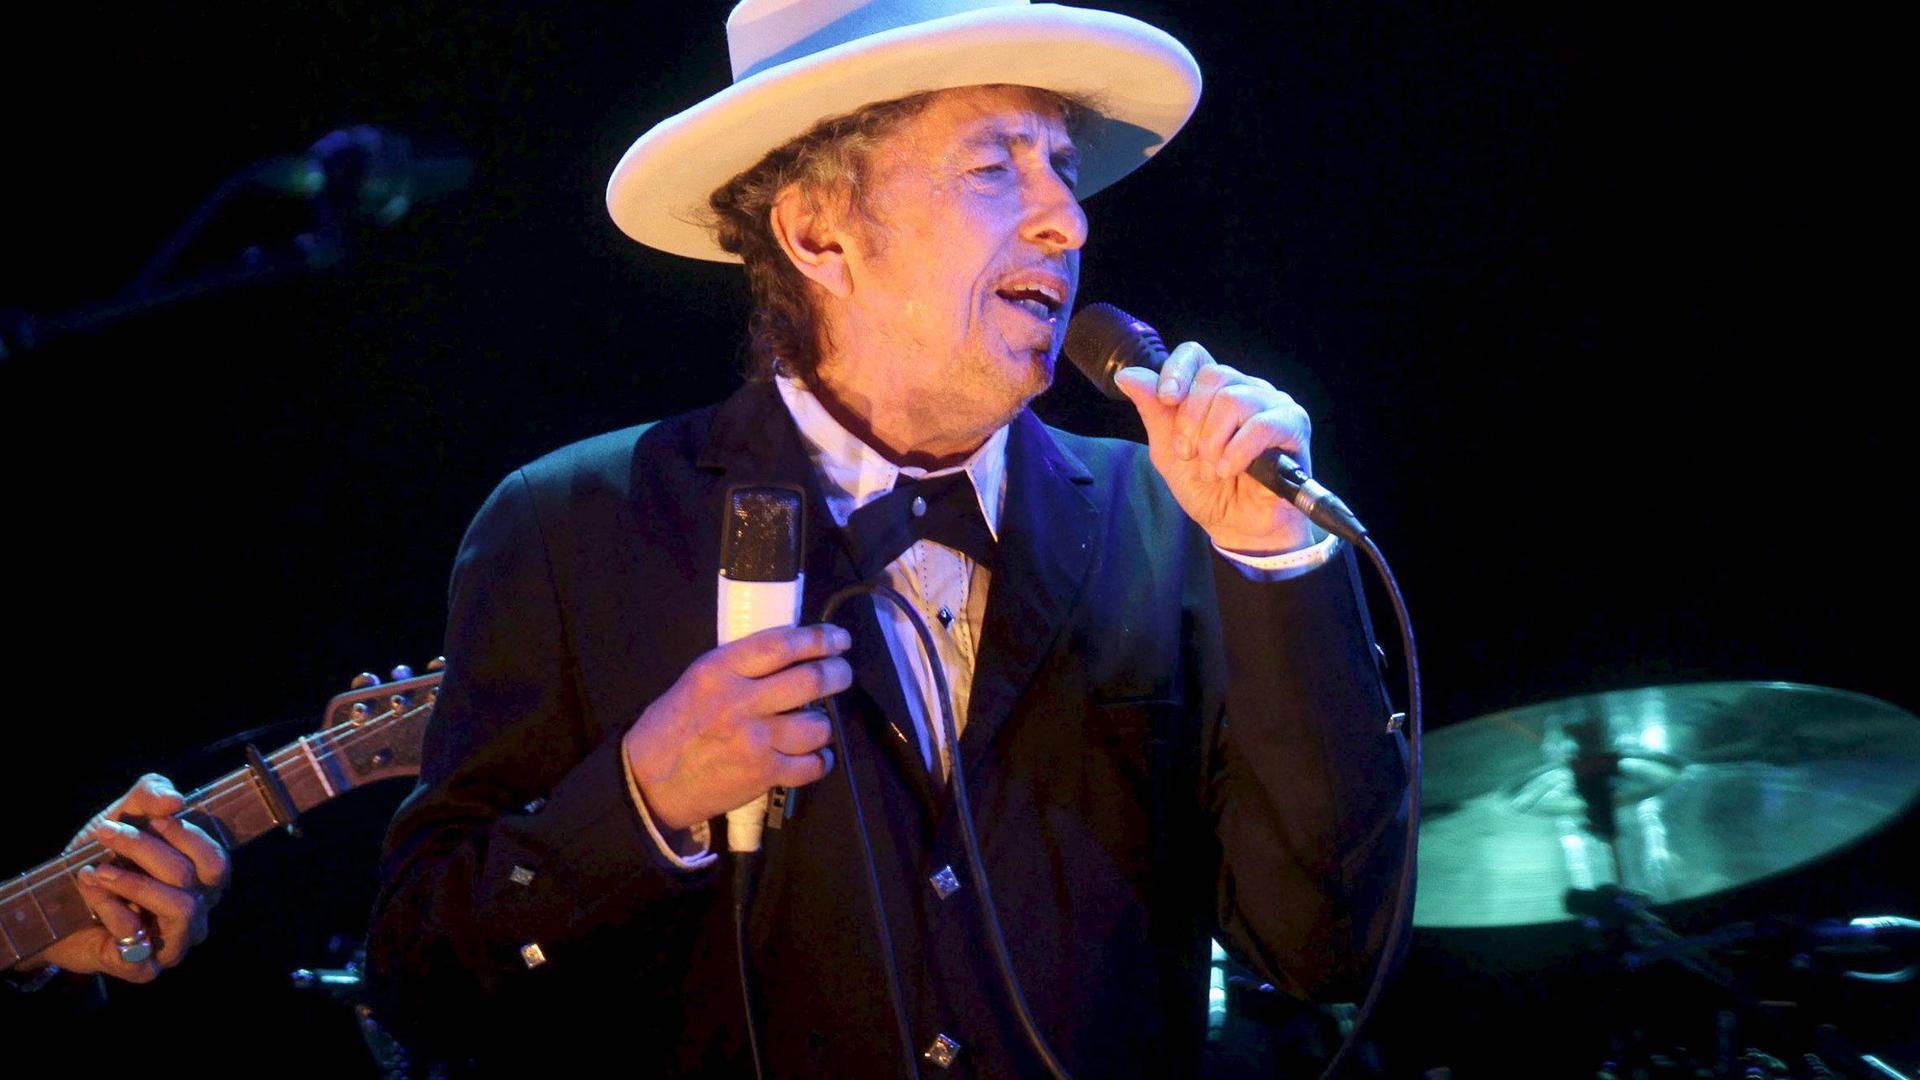 US-Rocksänger Bob Dylan bei einem Konzert am 14.07.2012 in Benicassim (Spanien).